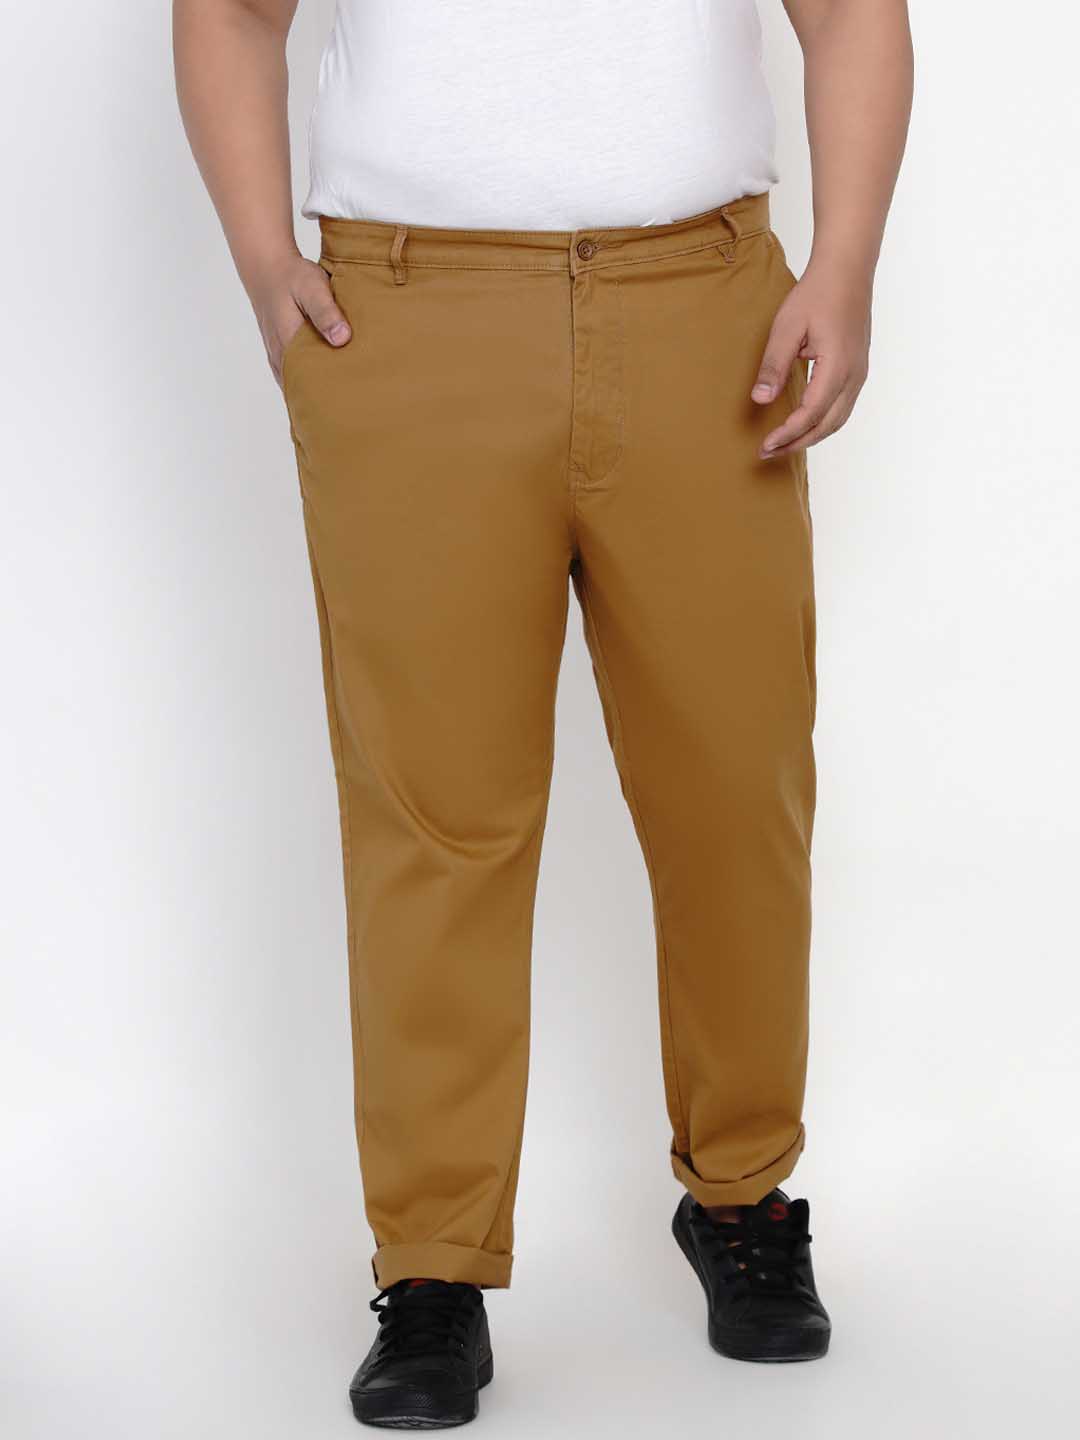 bottomwear/trousers/JPTR2195B/jptr2195b-1.jpg